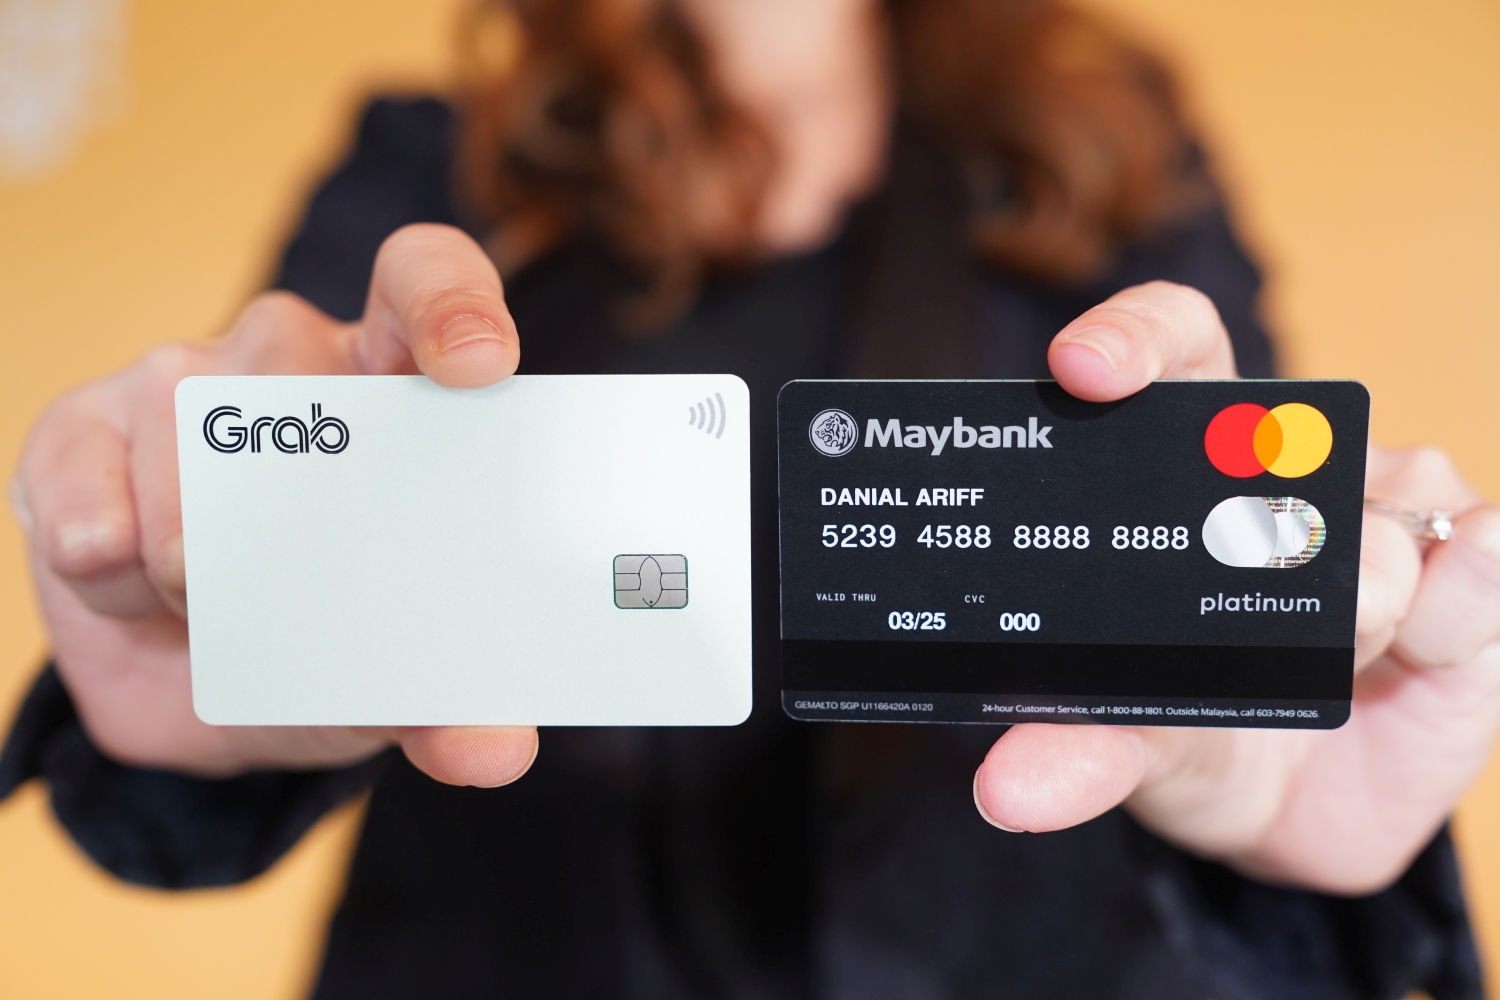 Maybank Grab Mastercard Credit Card: Everything you need ...